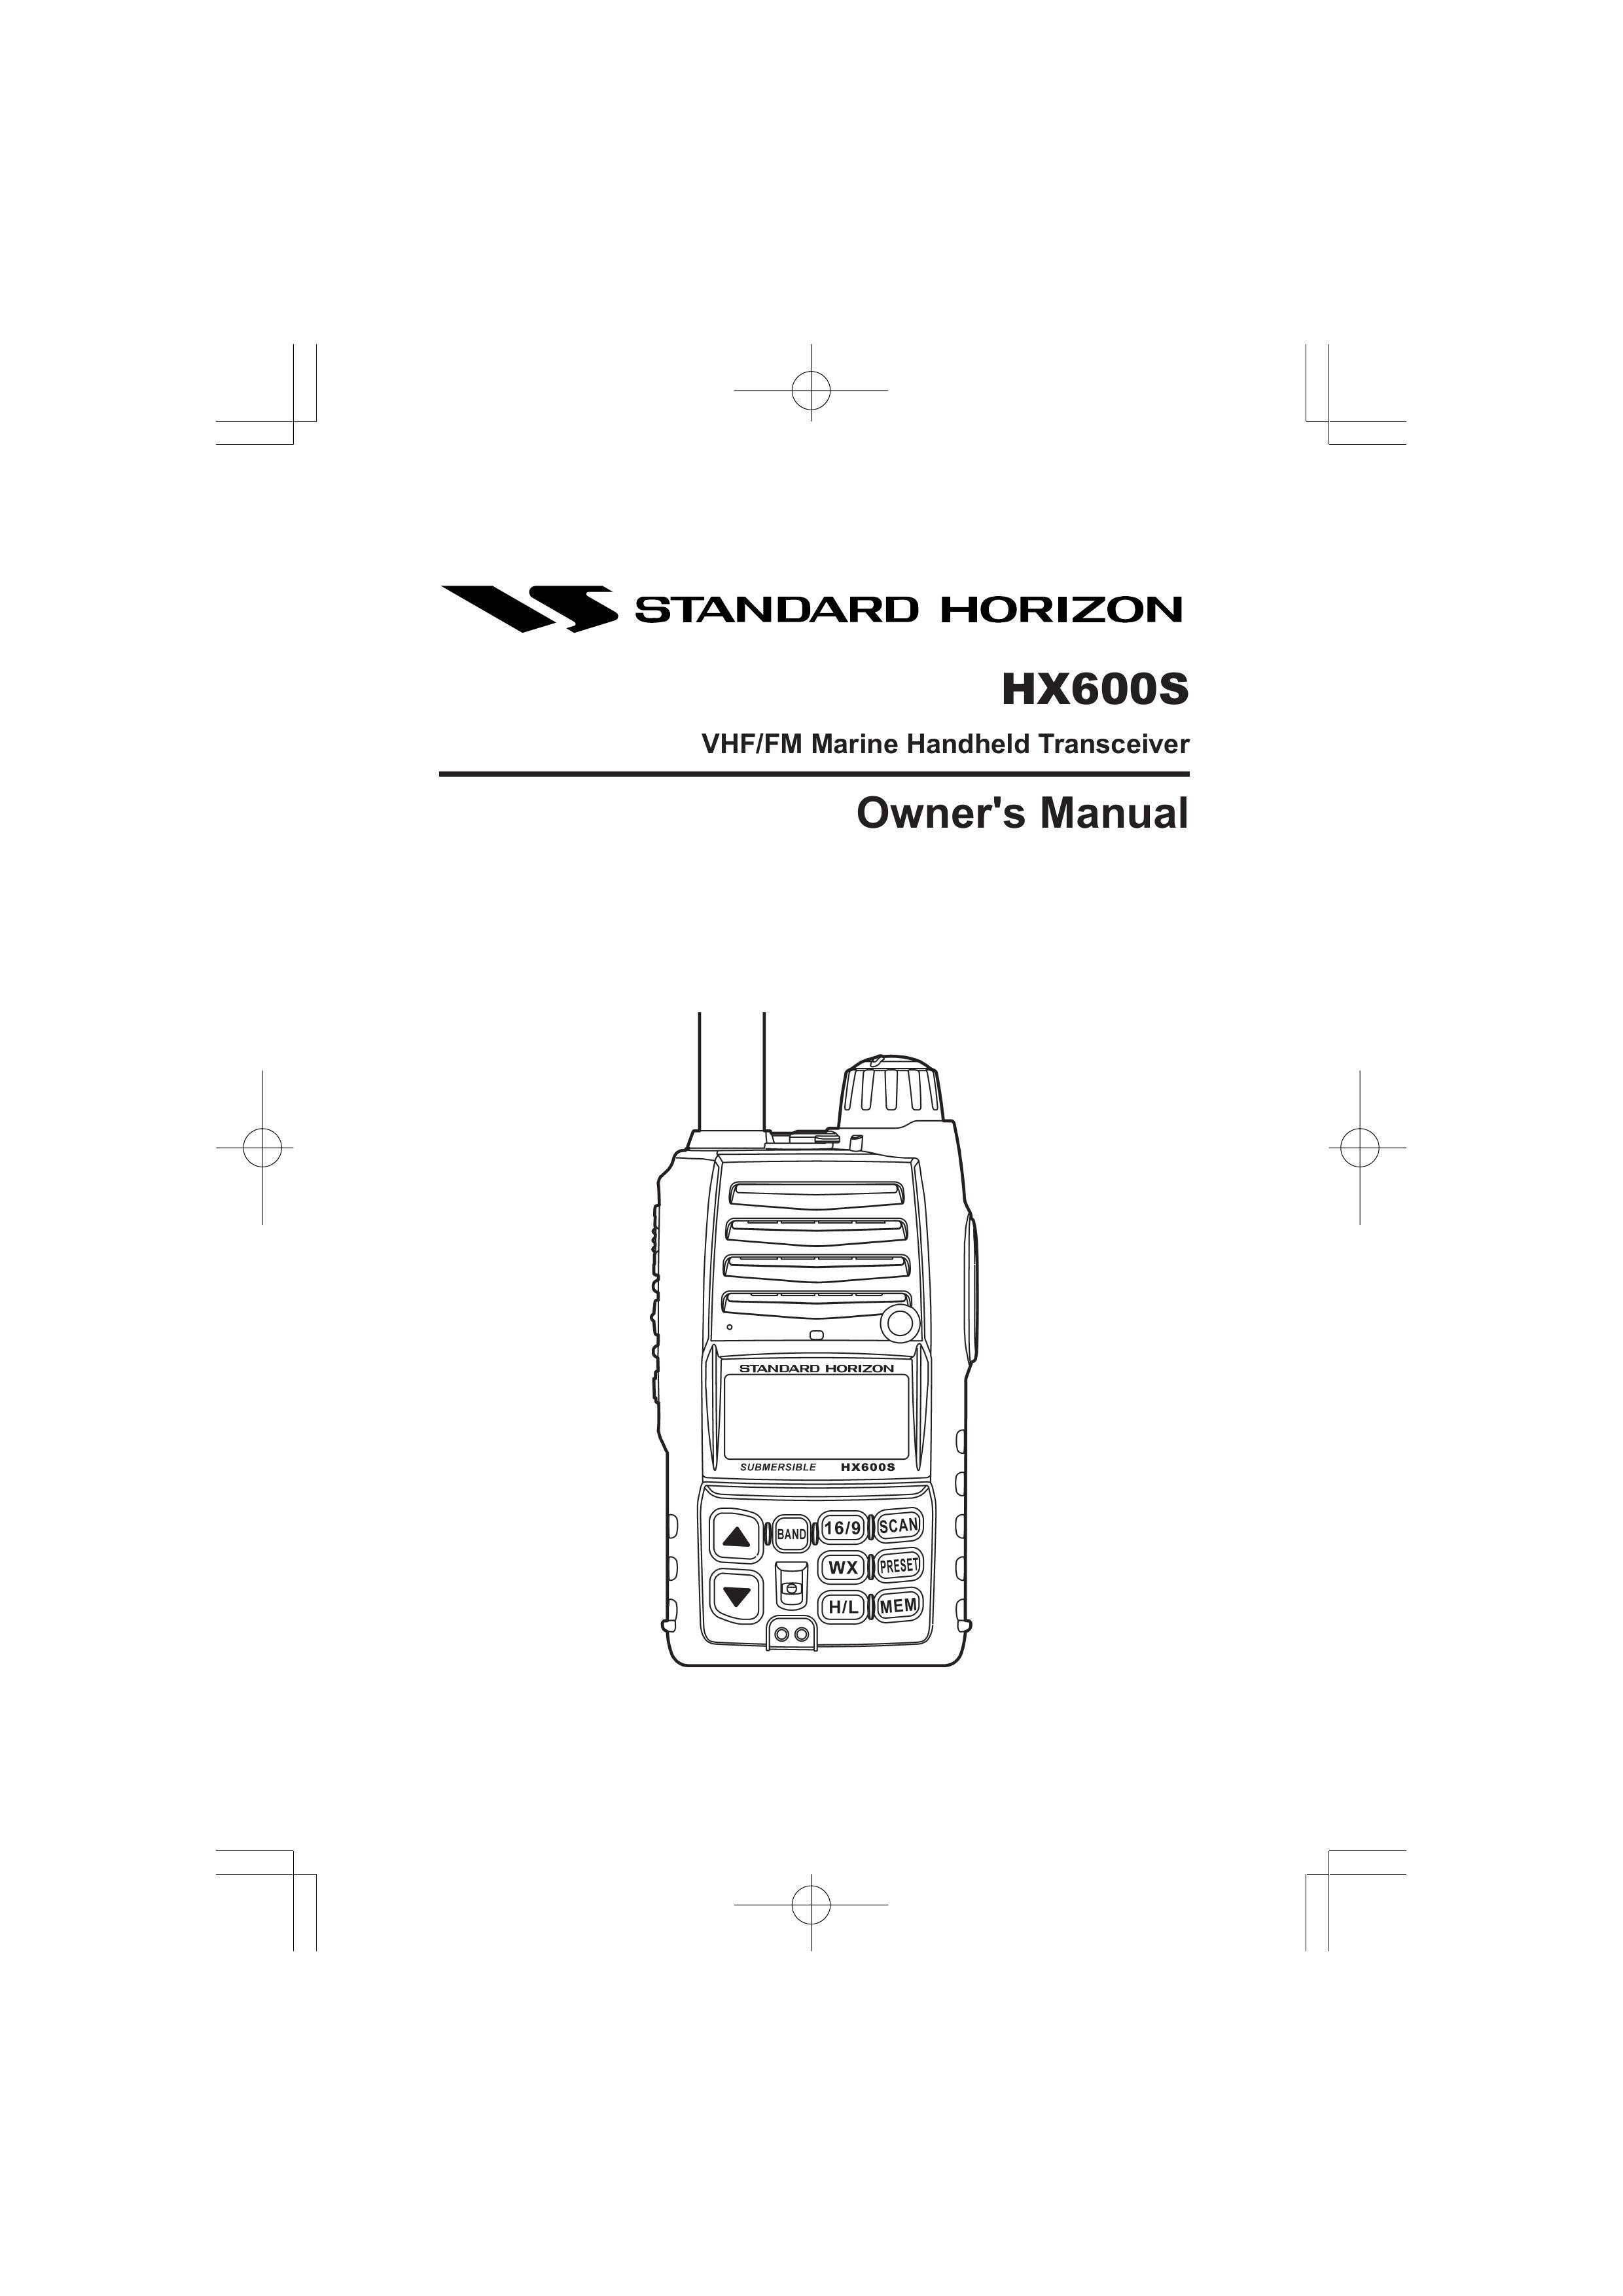 Standard Horizon HX600S Marine Radio User Manual